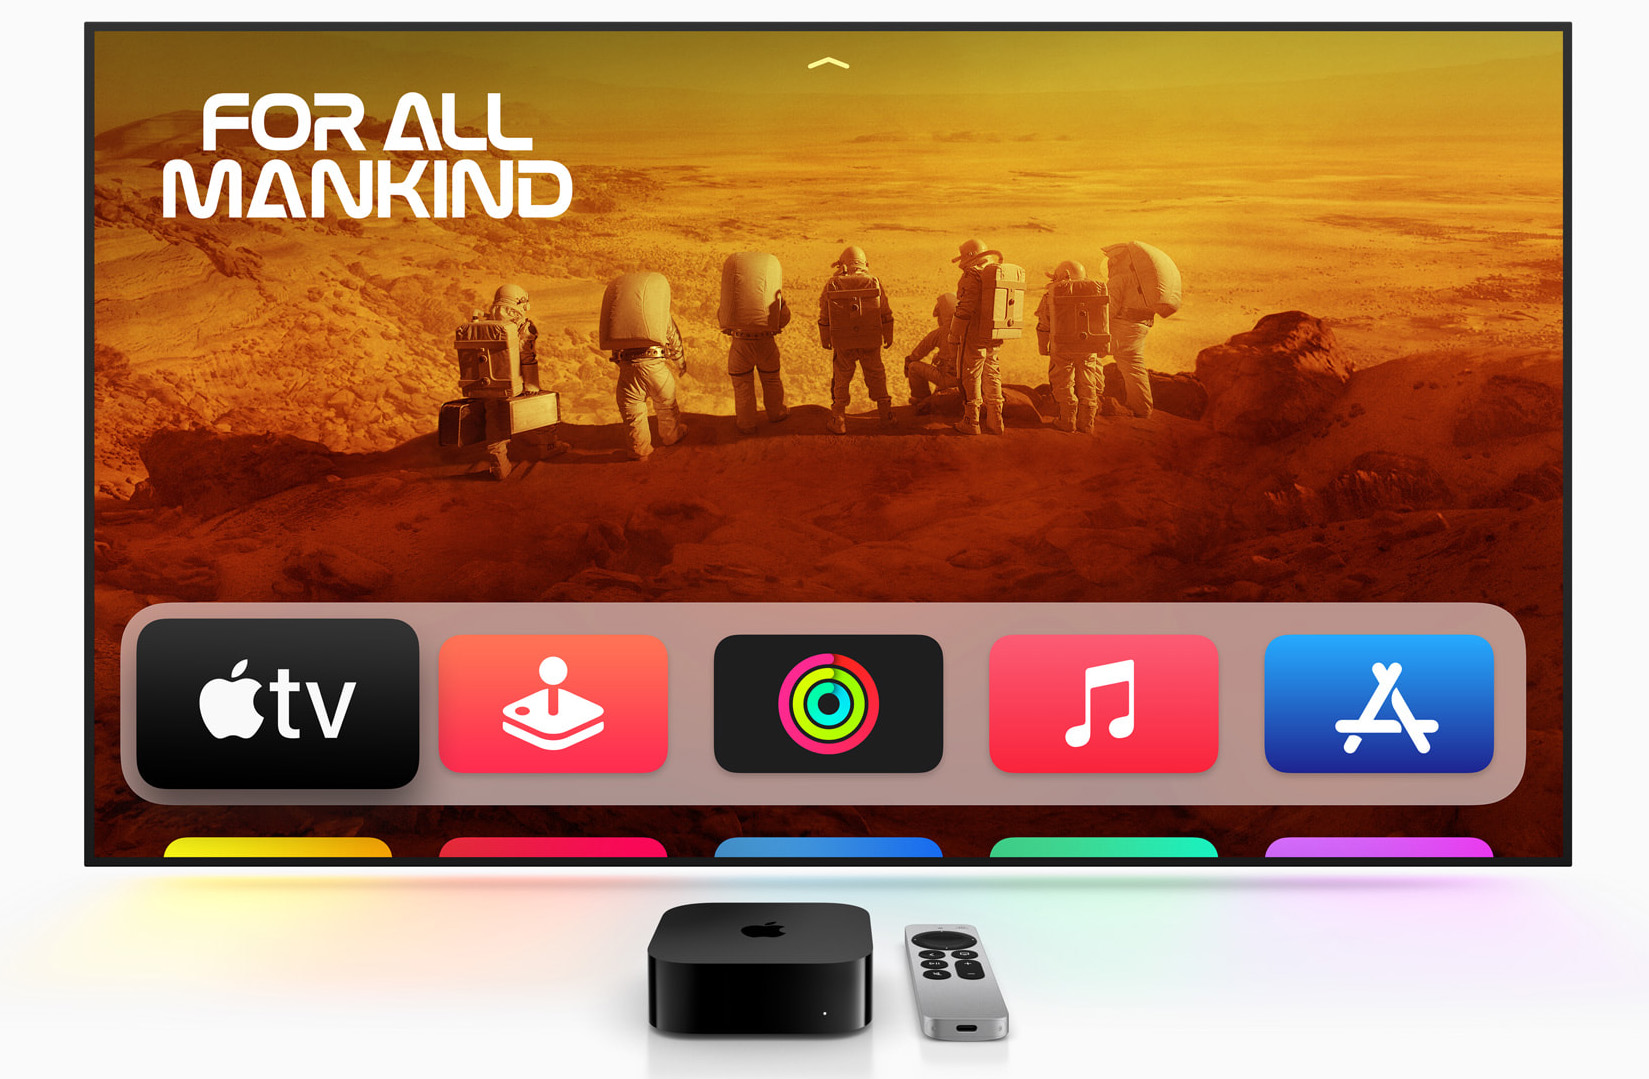 La interfaz de usuario de Apple TV 4K.